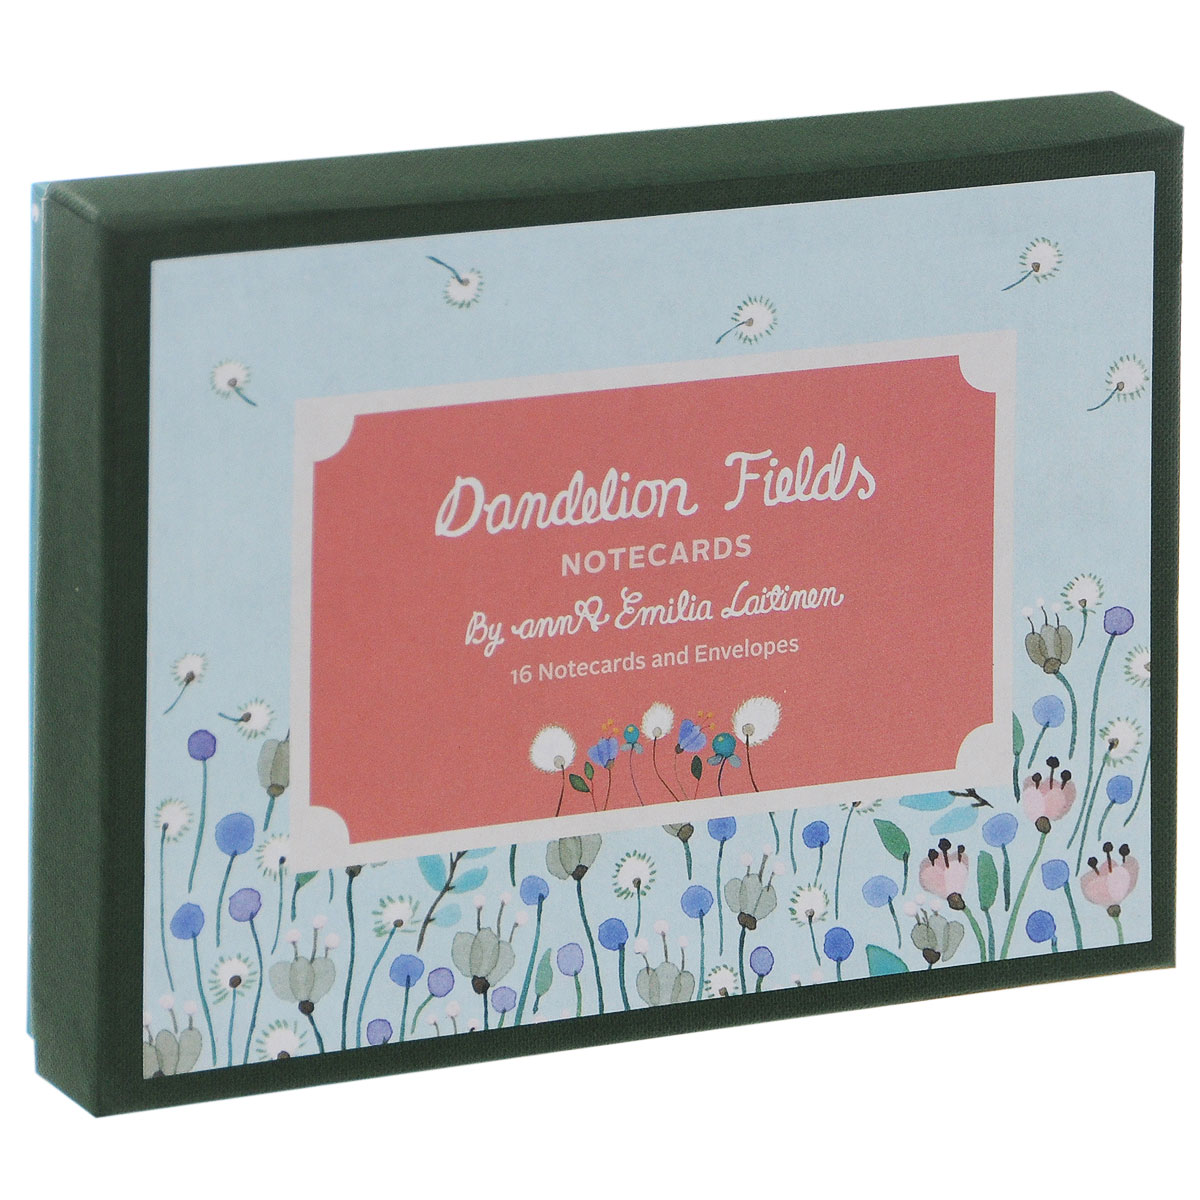 Dandelion Fields: Notecards